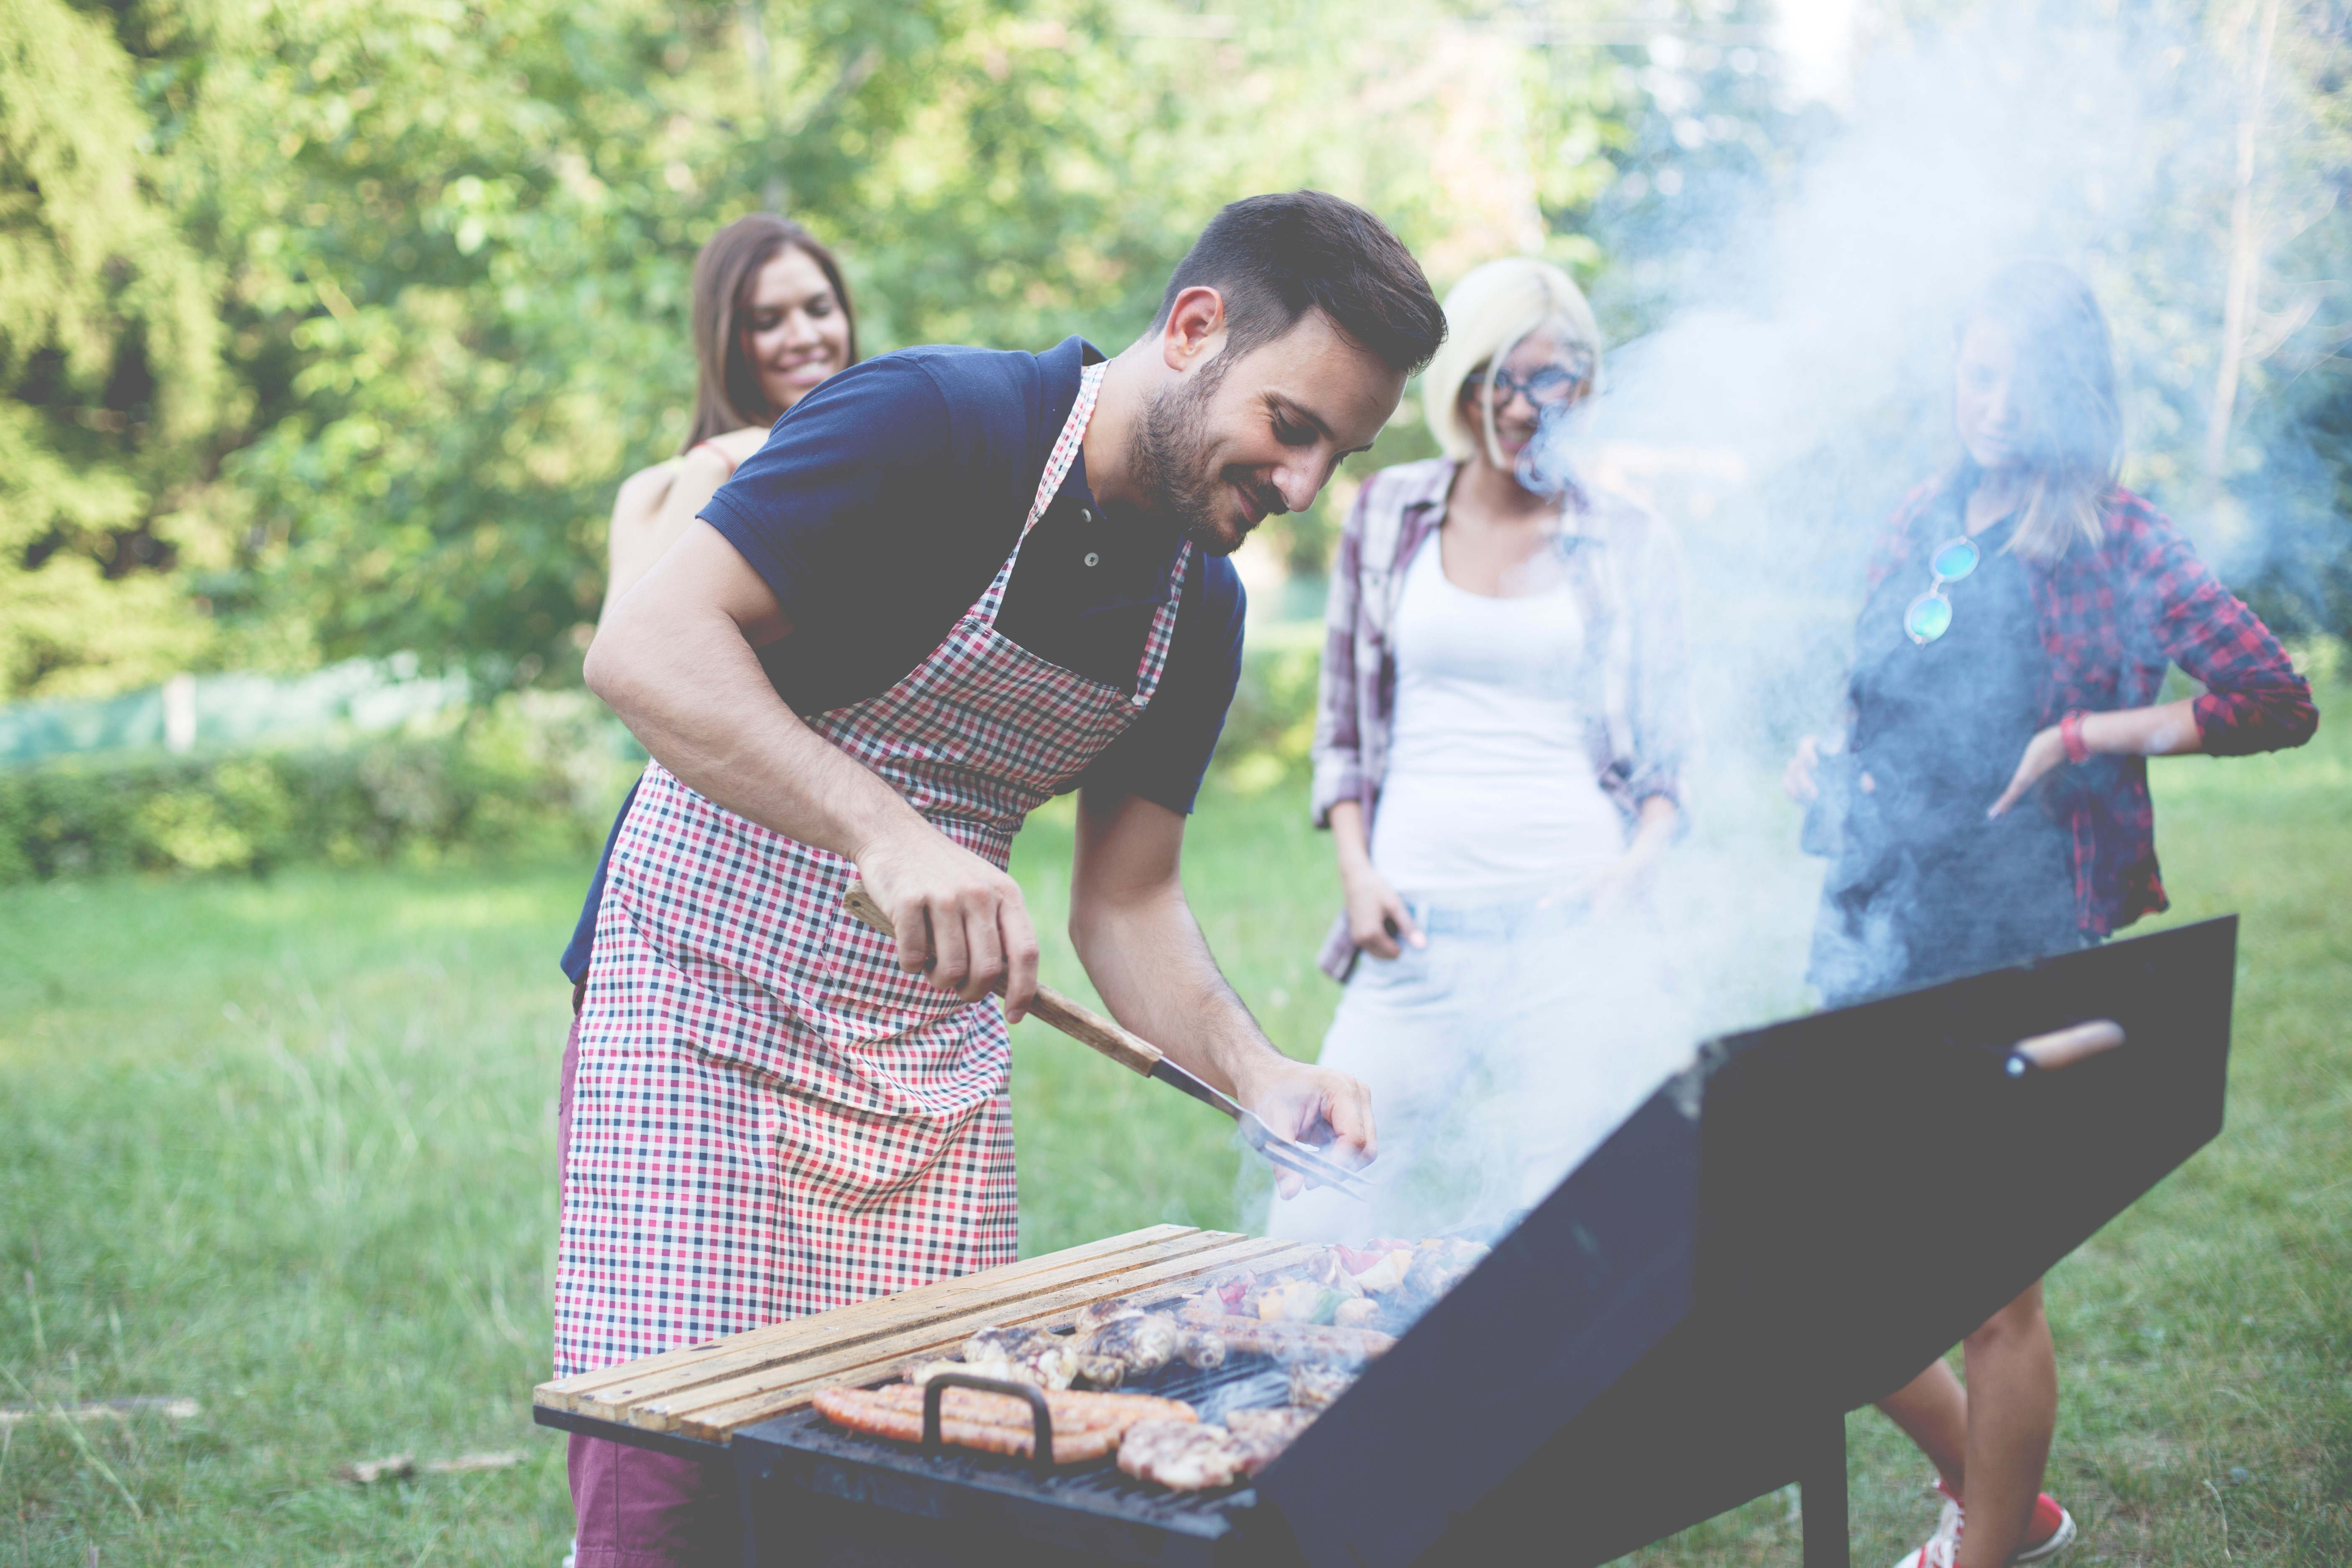 Des astuces pour bien cuire la viande au barbecue